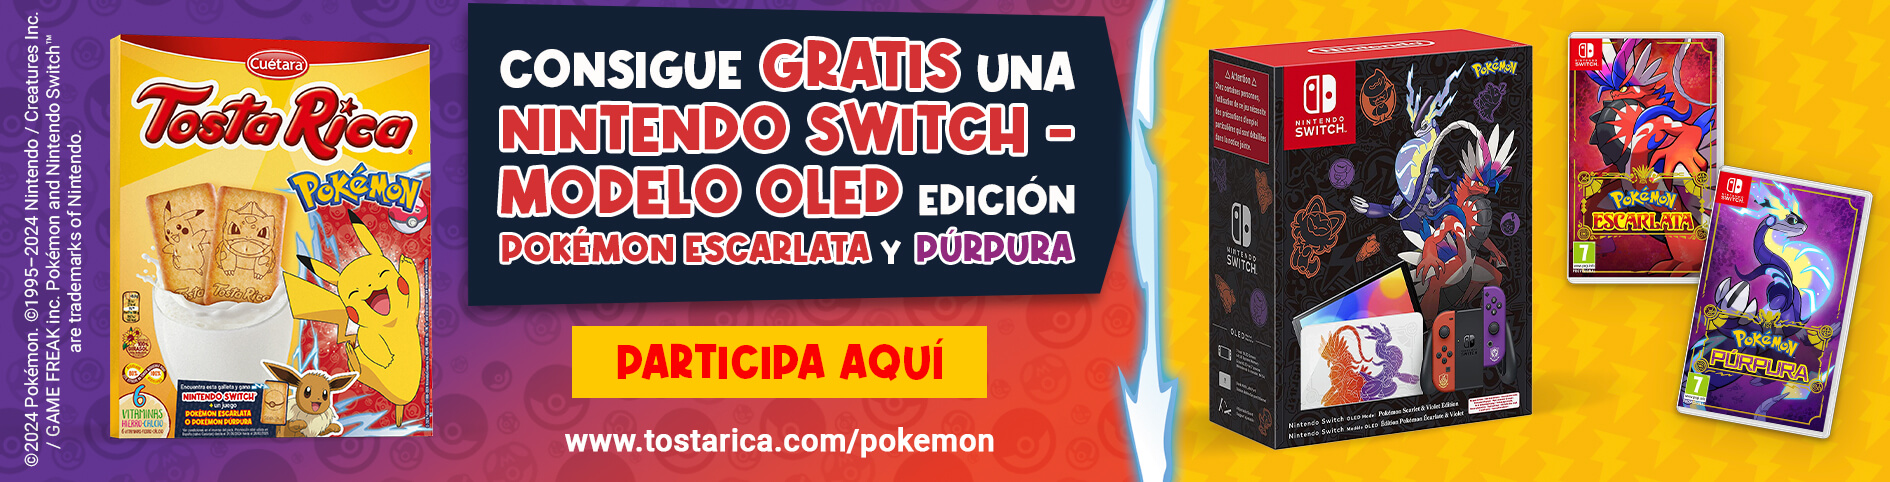 Promoción de Nintendo switch con TostaRica